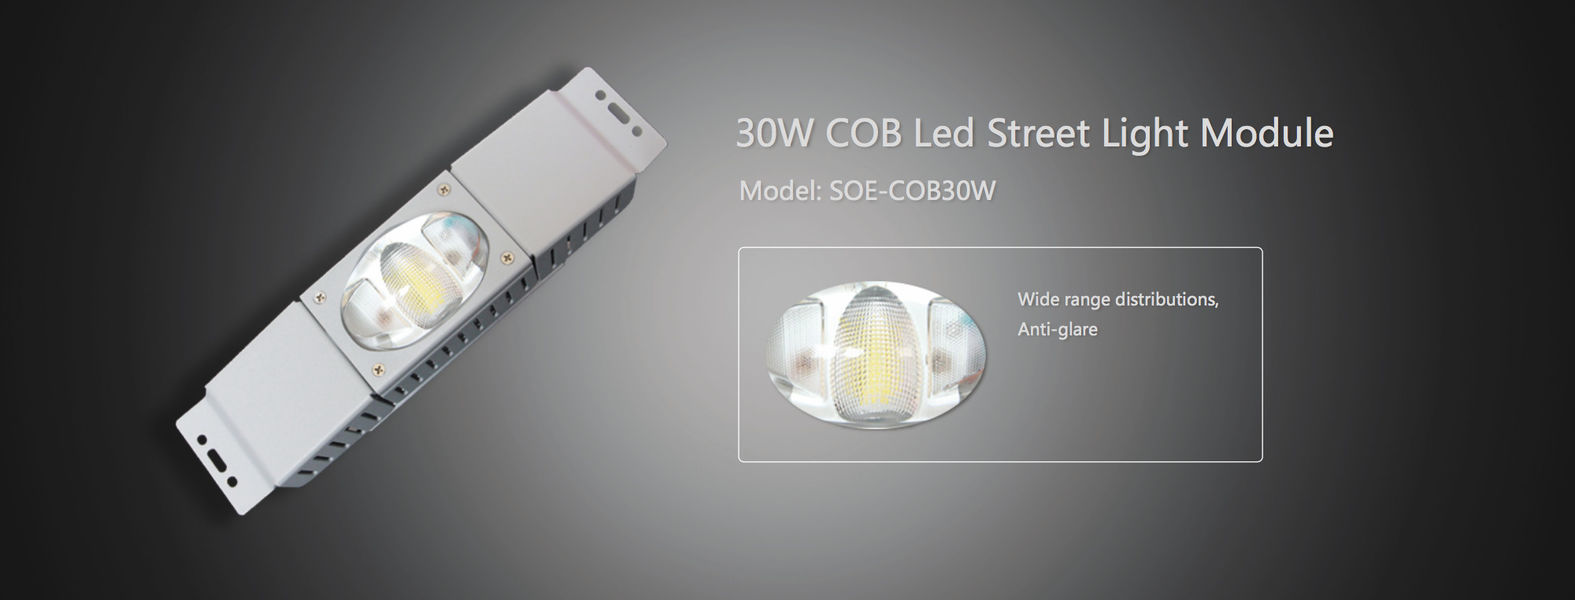 COB LED Modules